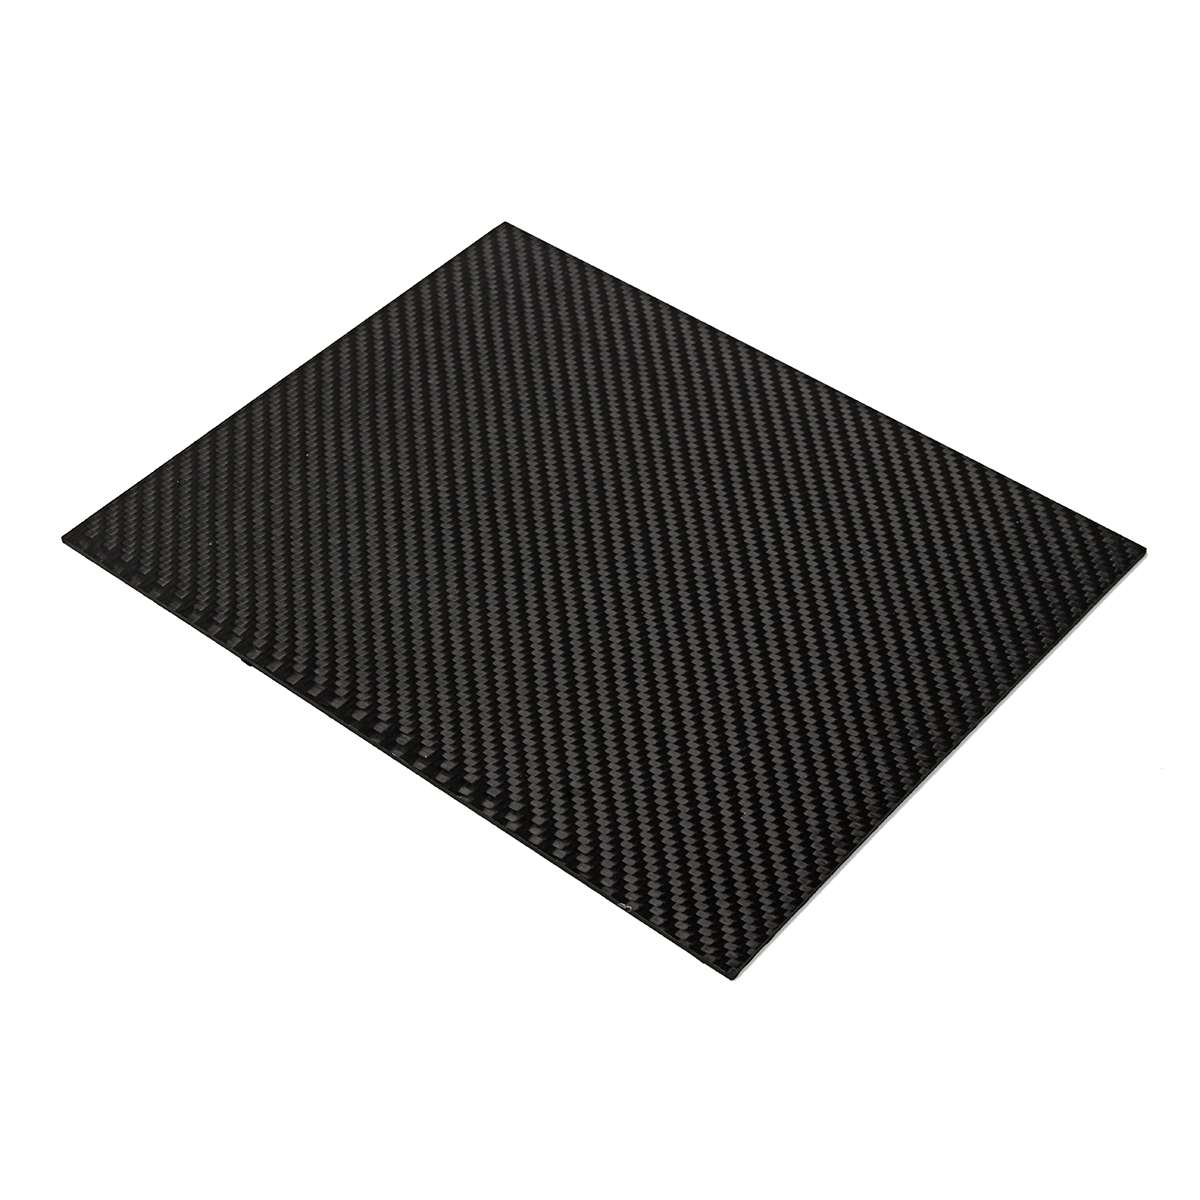 200x250x05-2mm-Plain-Weave-3K-Carbon-Fiber-Plate-Panel-Sheet-Twill-Matt-Surface-Board-1332225-7